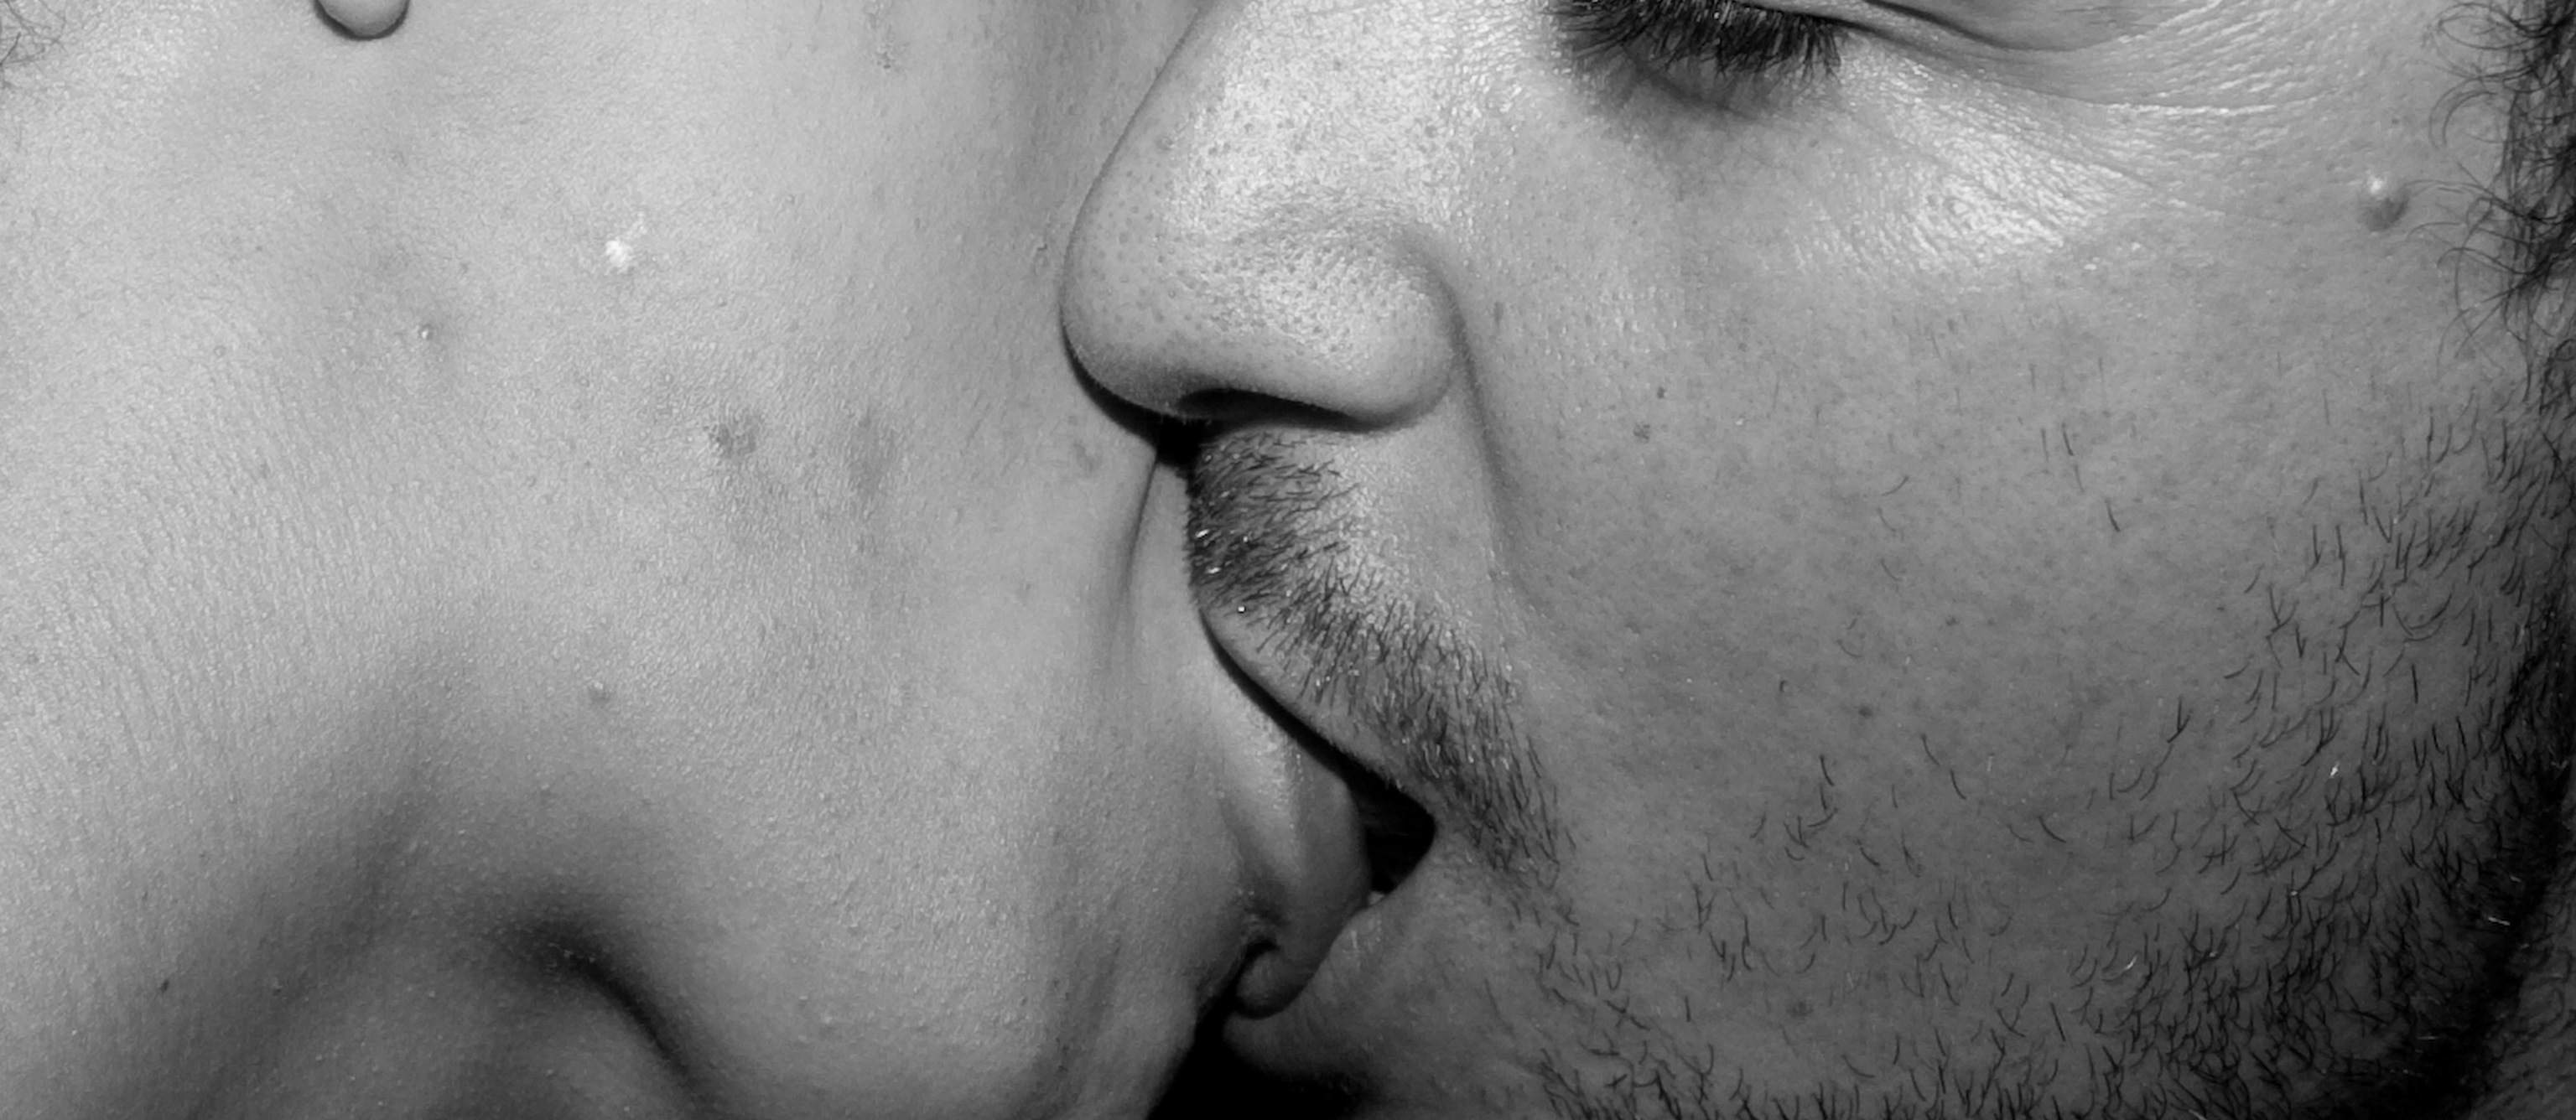 черно белые фото поцелуев губами